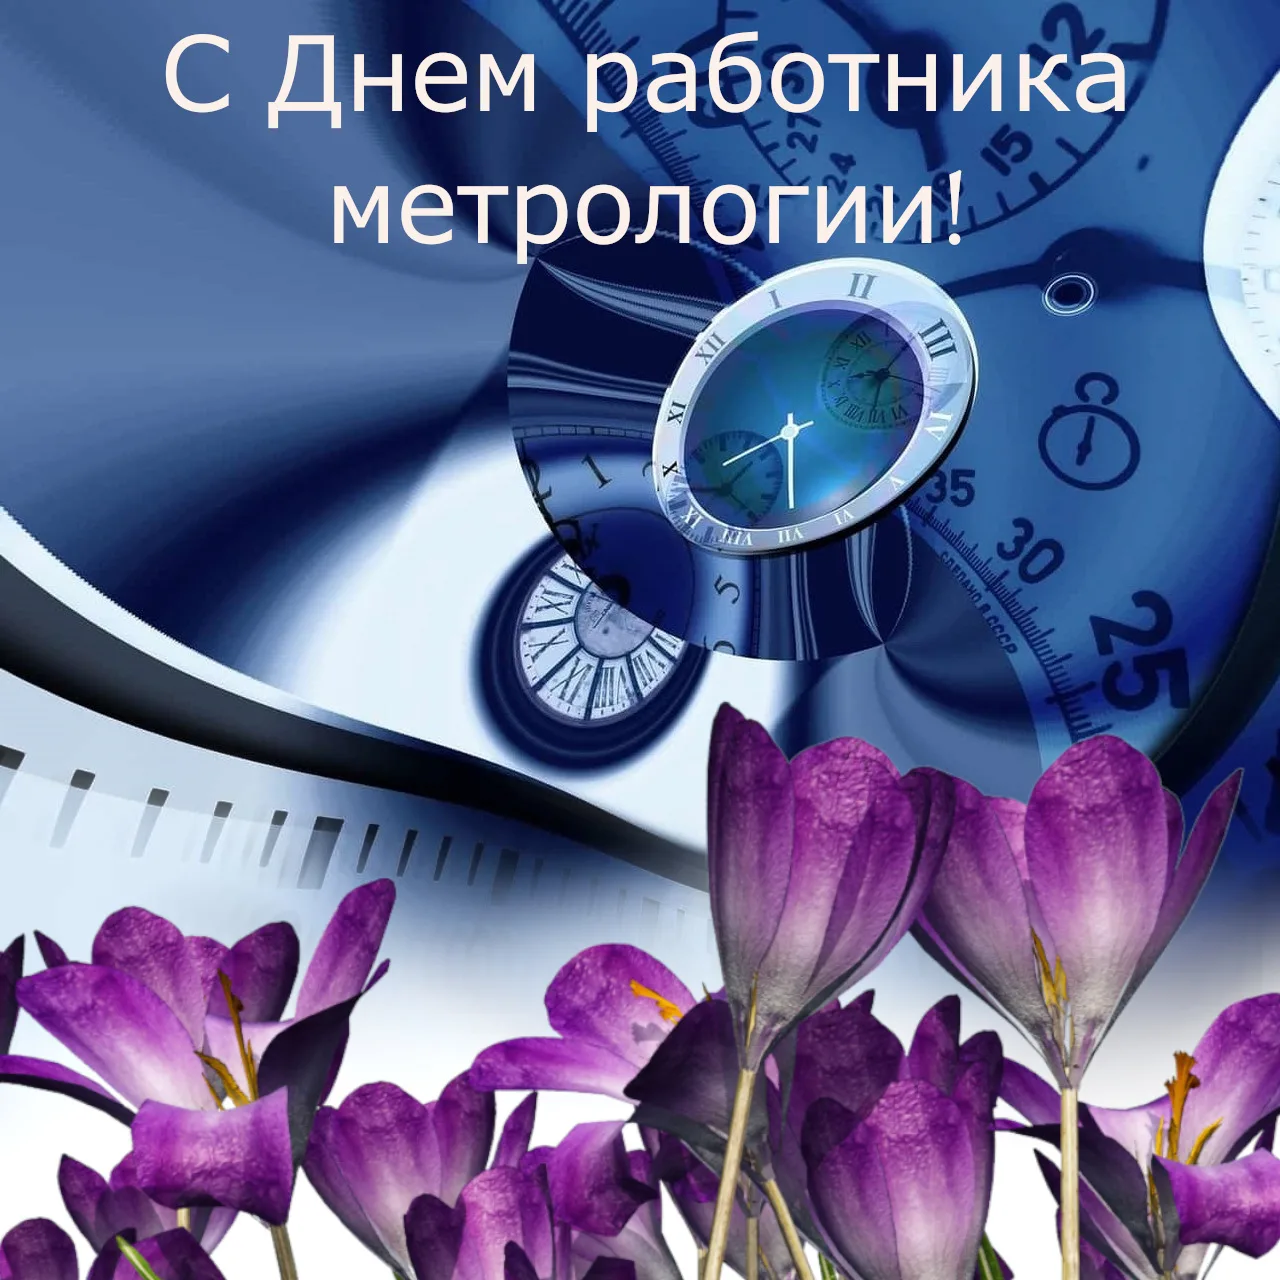 Фото Поздравления в день работников стандартизации и метрологии Украины #7